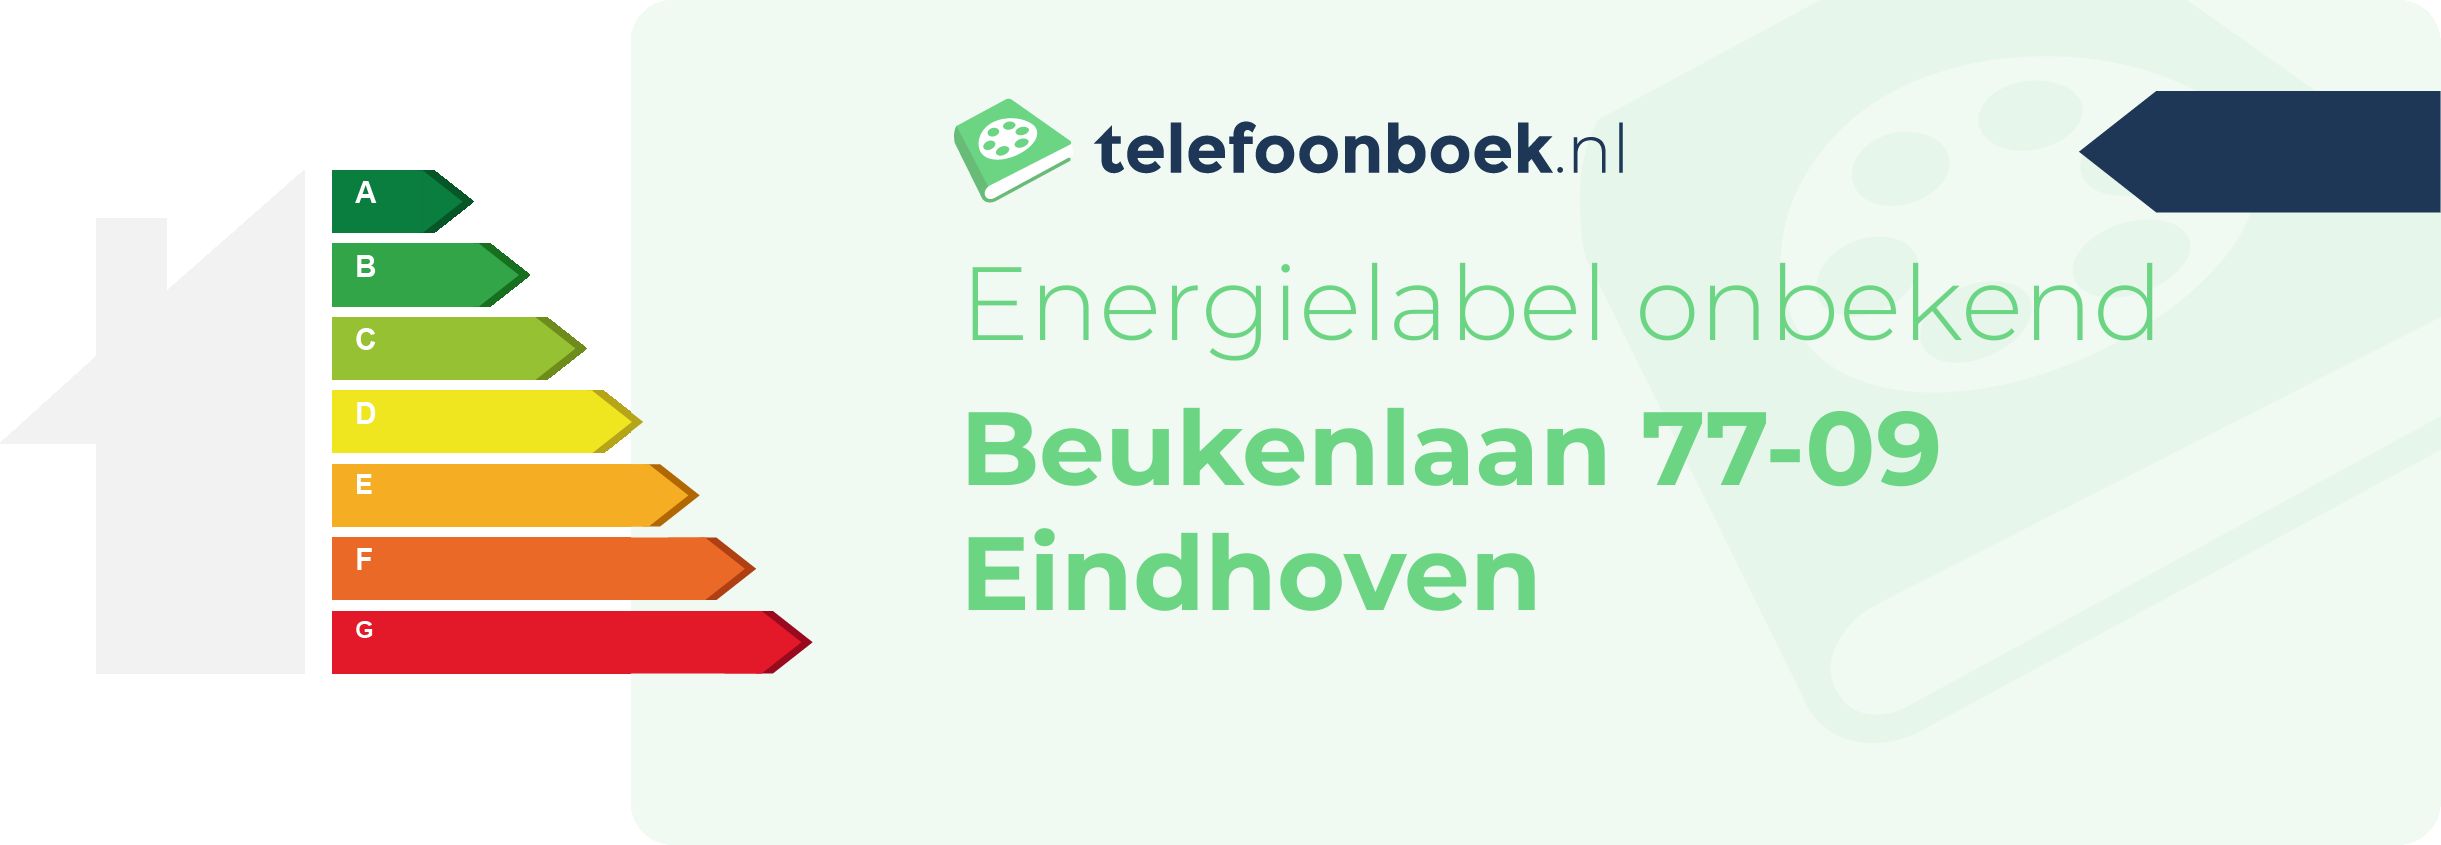 Energielabel Beukenlaan 77-09 Eindhoven